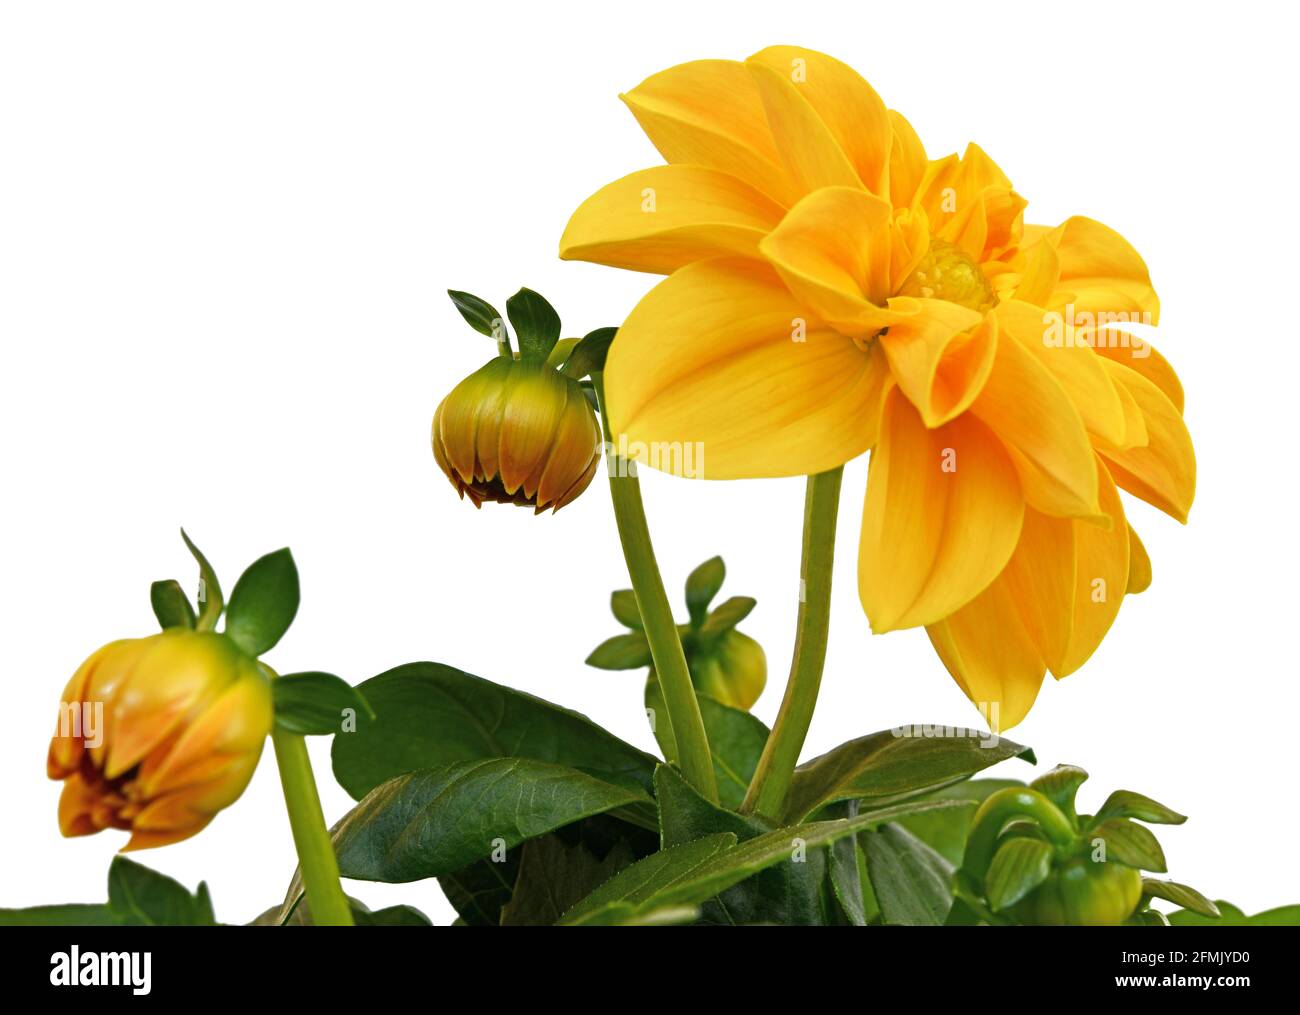 yellow dahlia Stock Photo